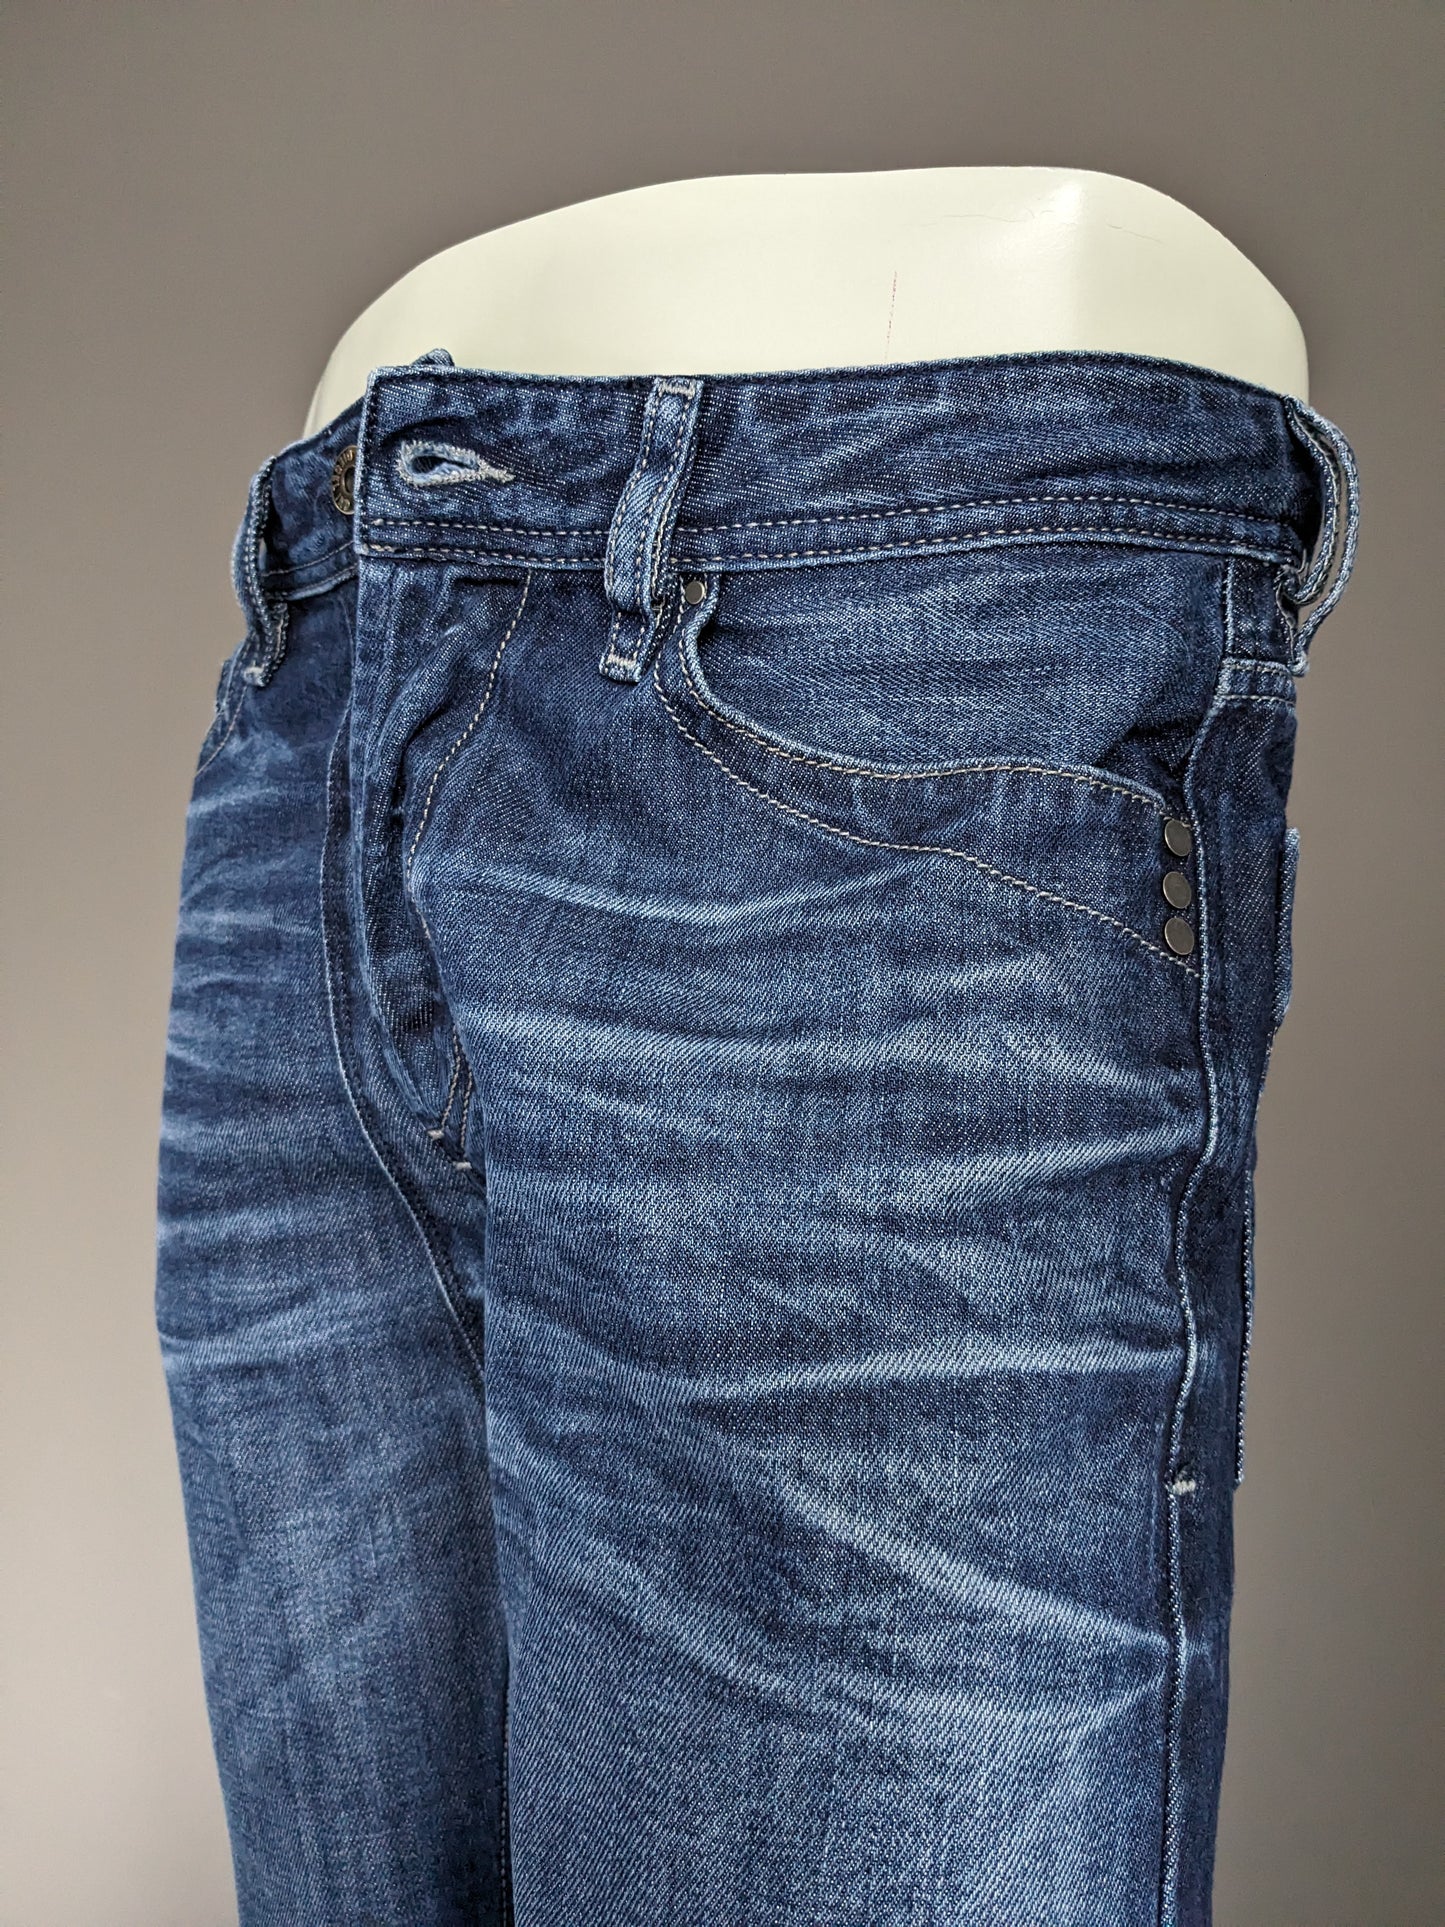 Jeans diesel. Colorato blu scuro. Taglia W31 - L32. Digita "Mennit".